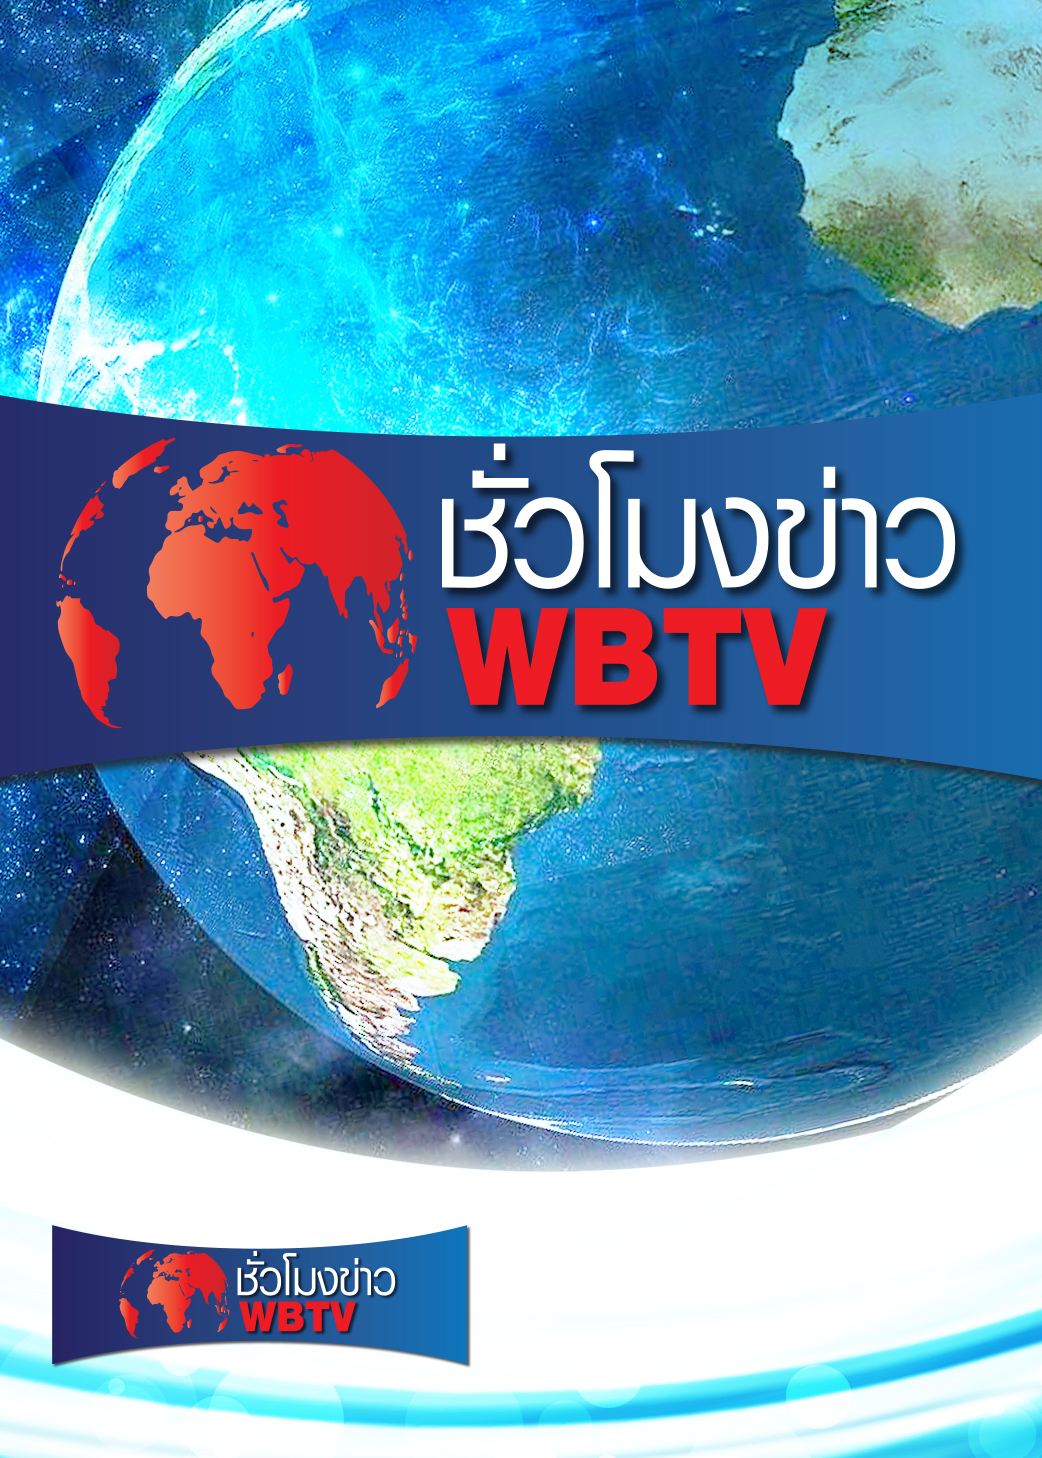 ชั่วโมงข่าว WBTV | ออกอากาศวันที่ 13 ก.ย. 64